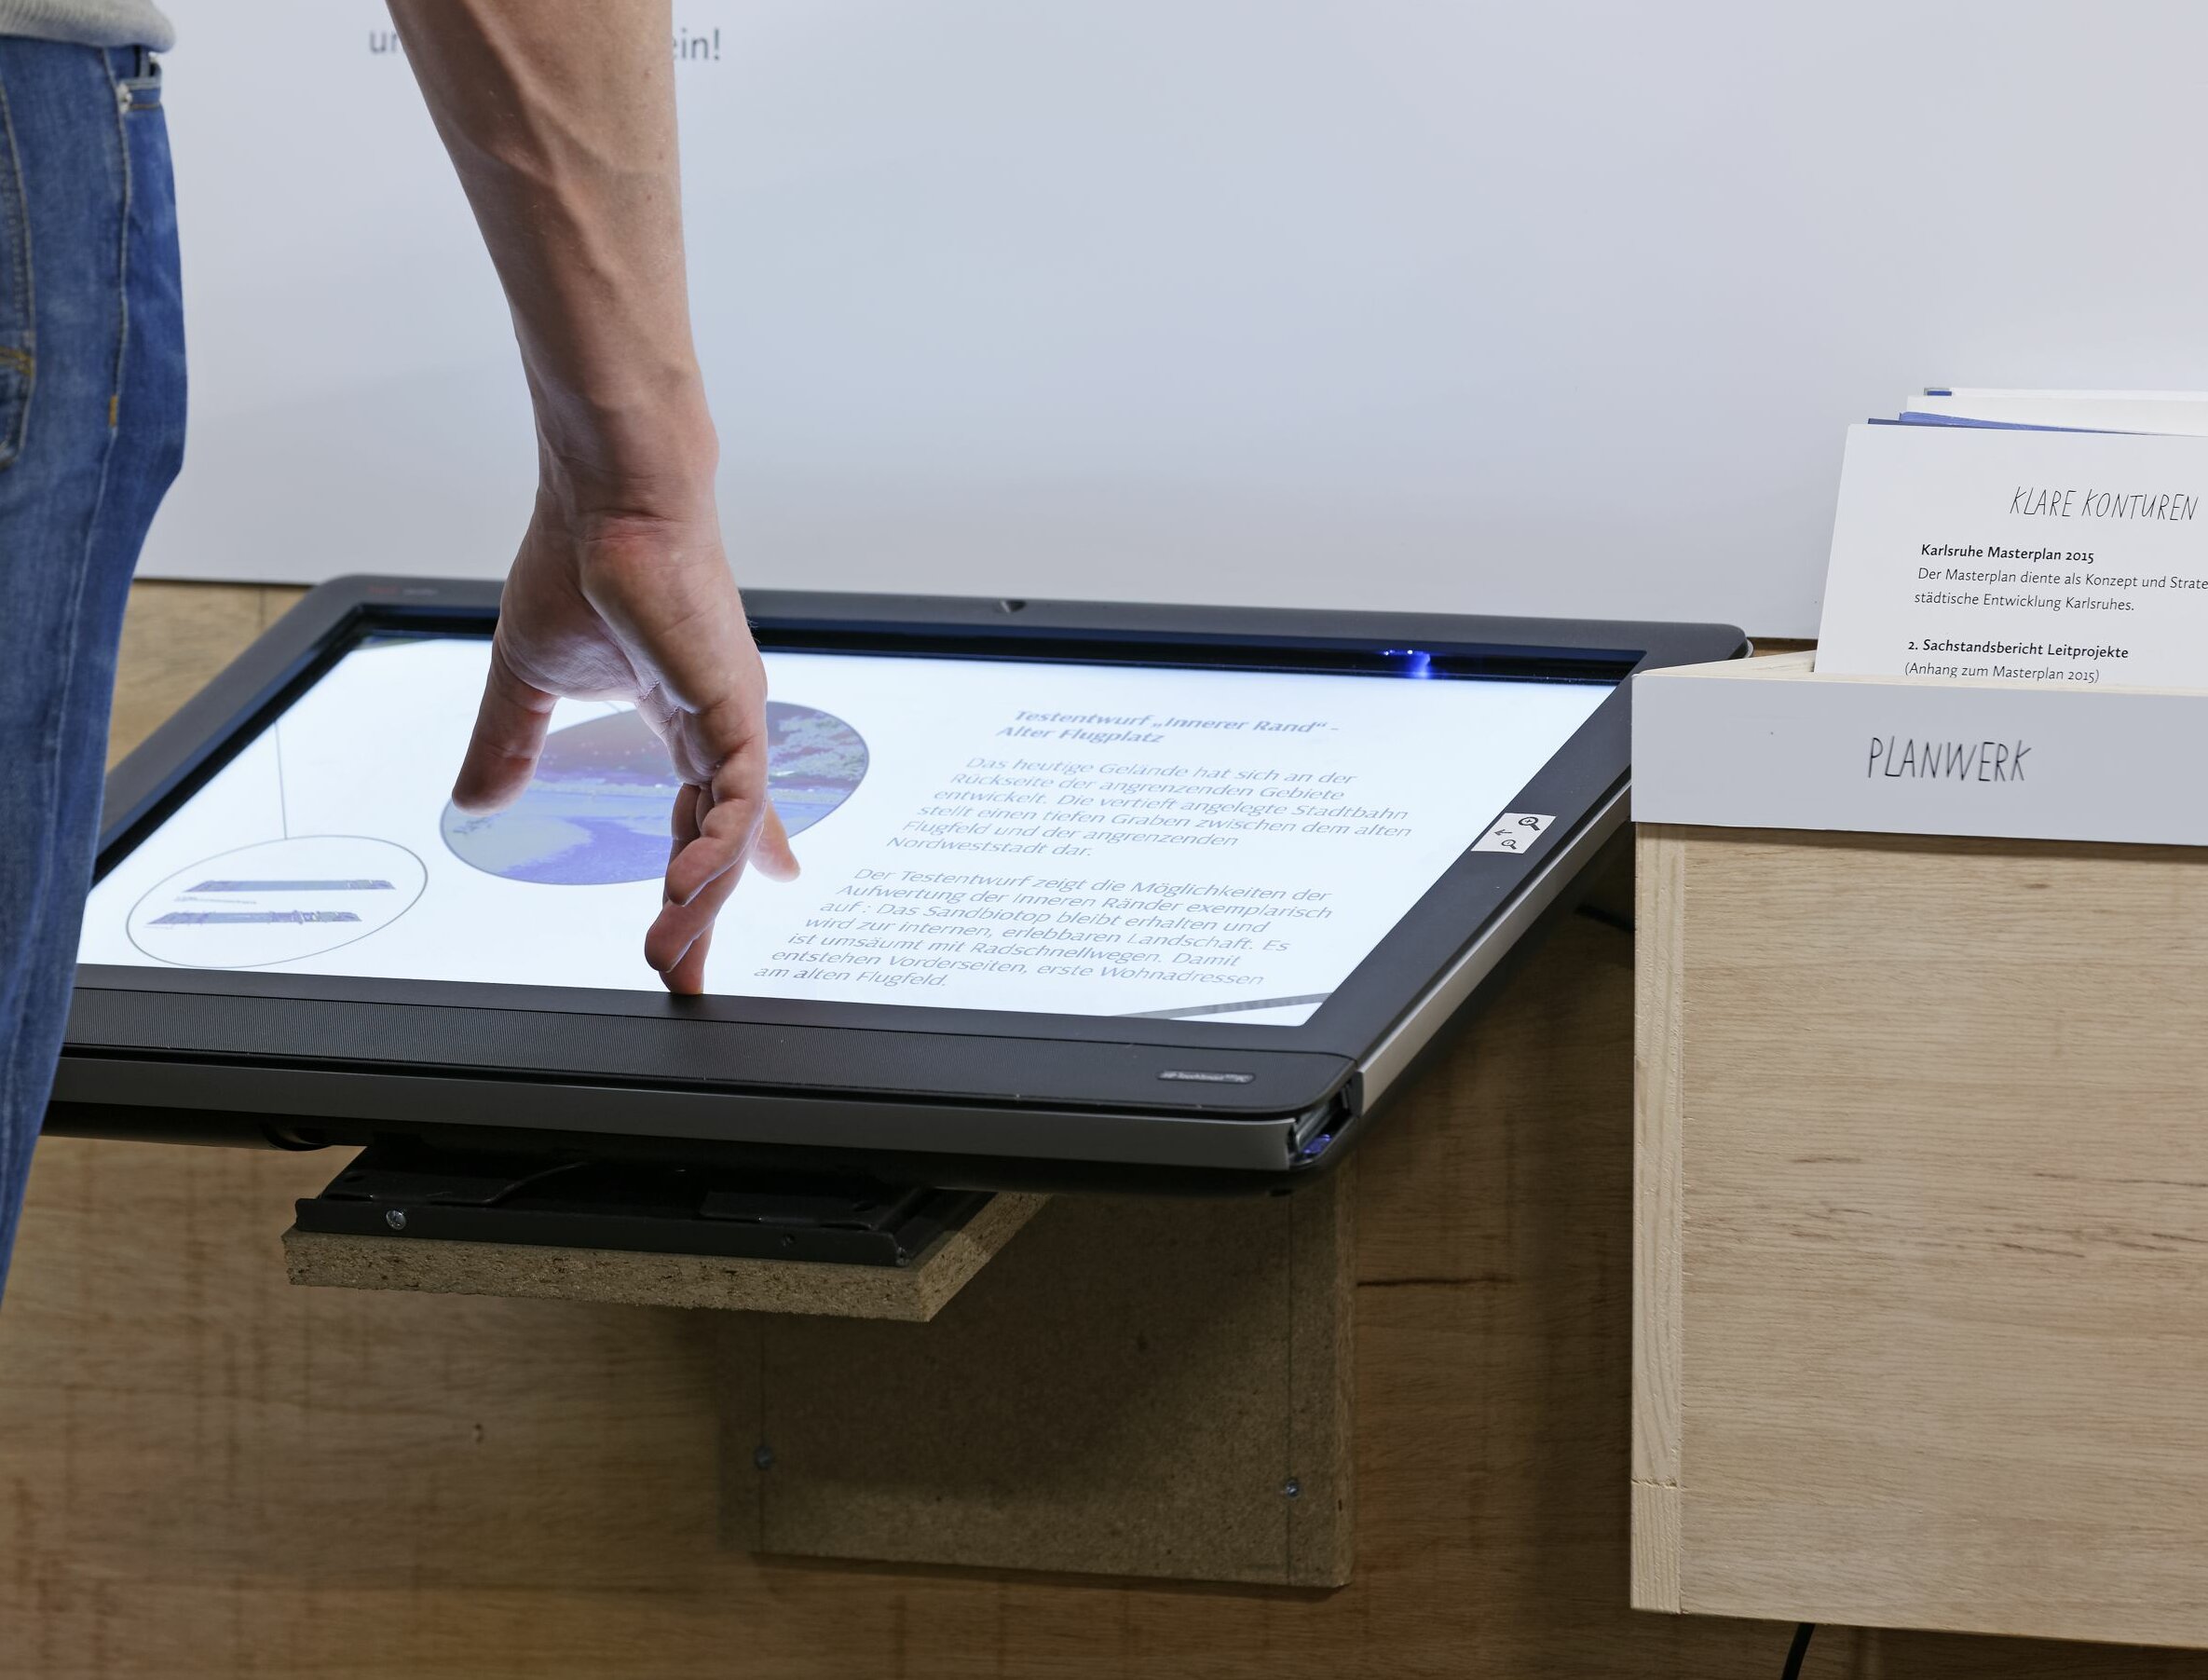 Abbildung eines Touchscreens in der Ausstellung